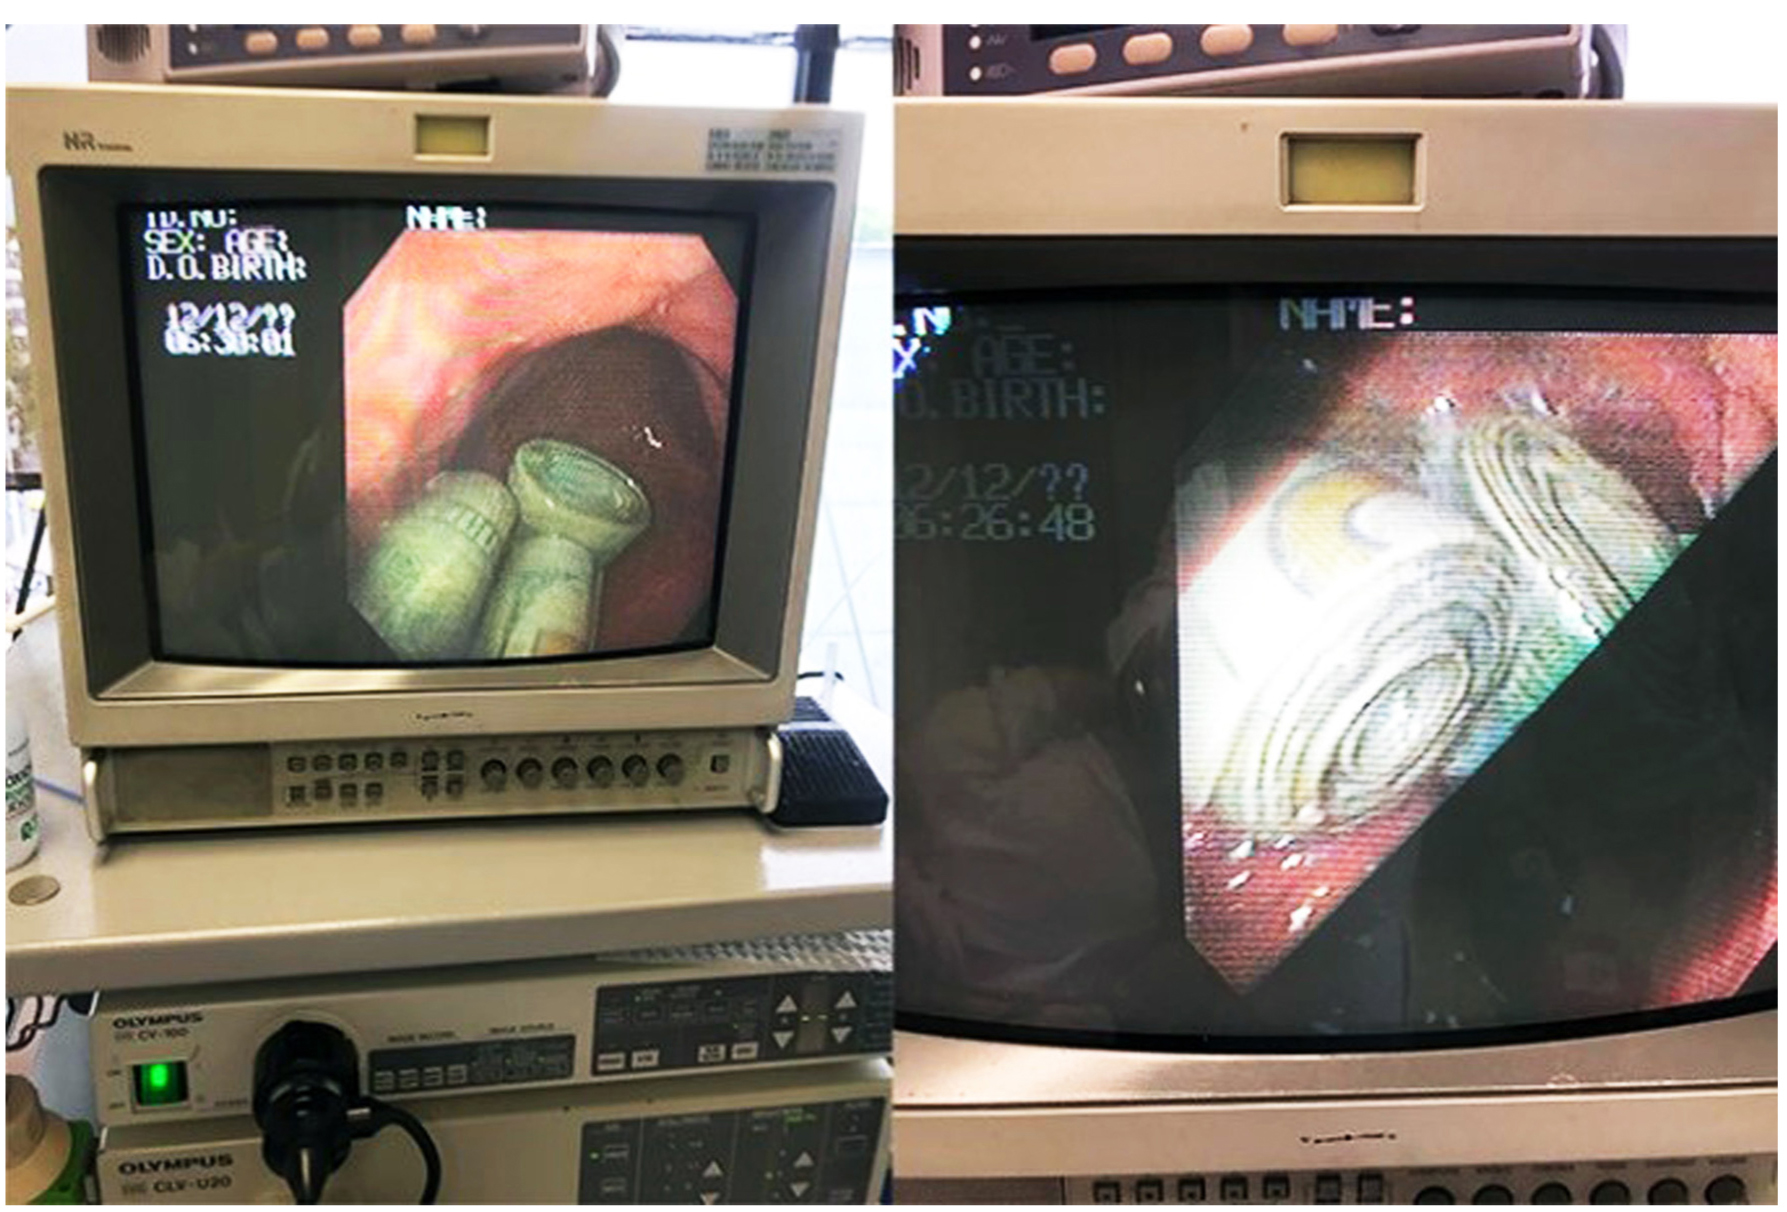 Figura 1. Bezoar de dinero que generó un síndrome pilórico observado en el monitor de laparoscopia